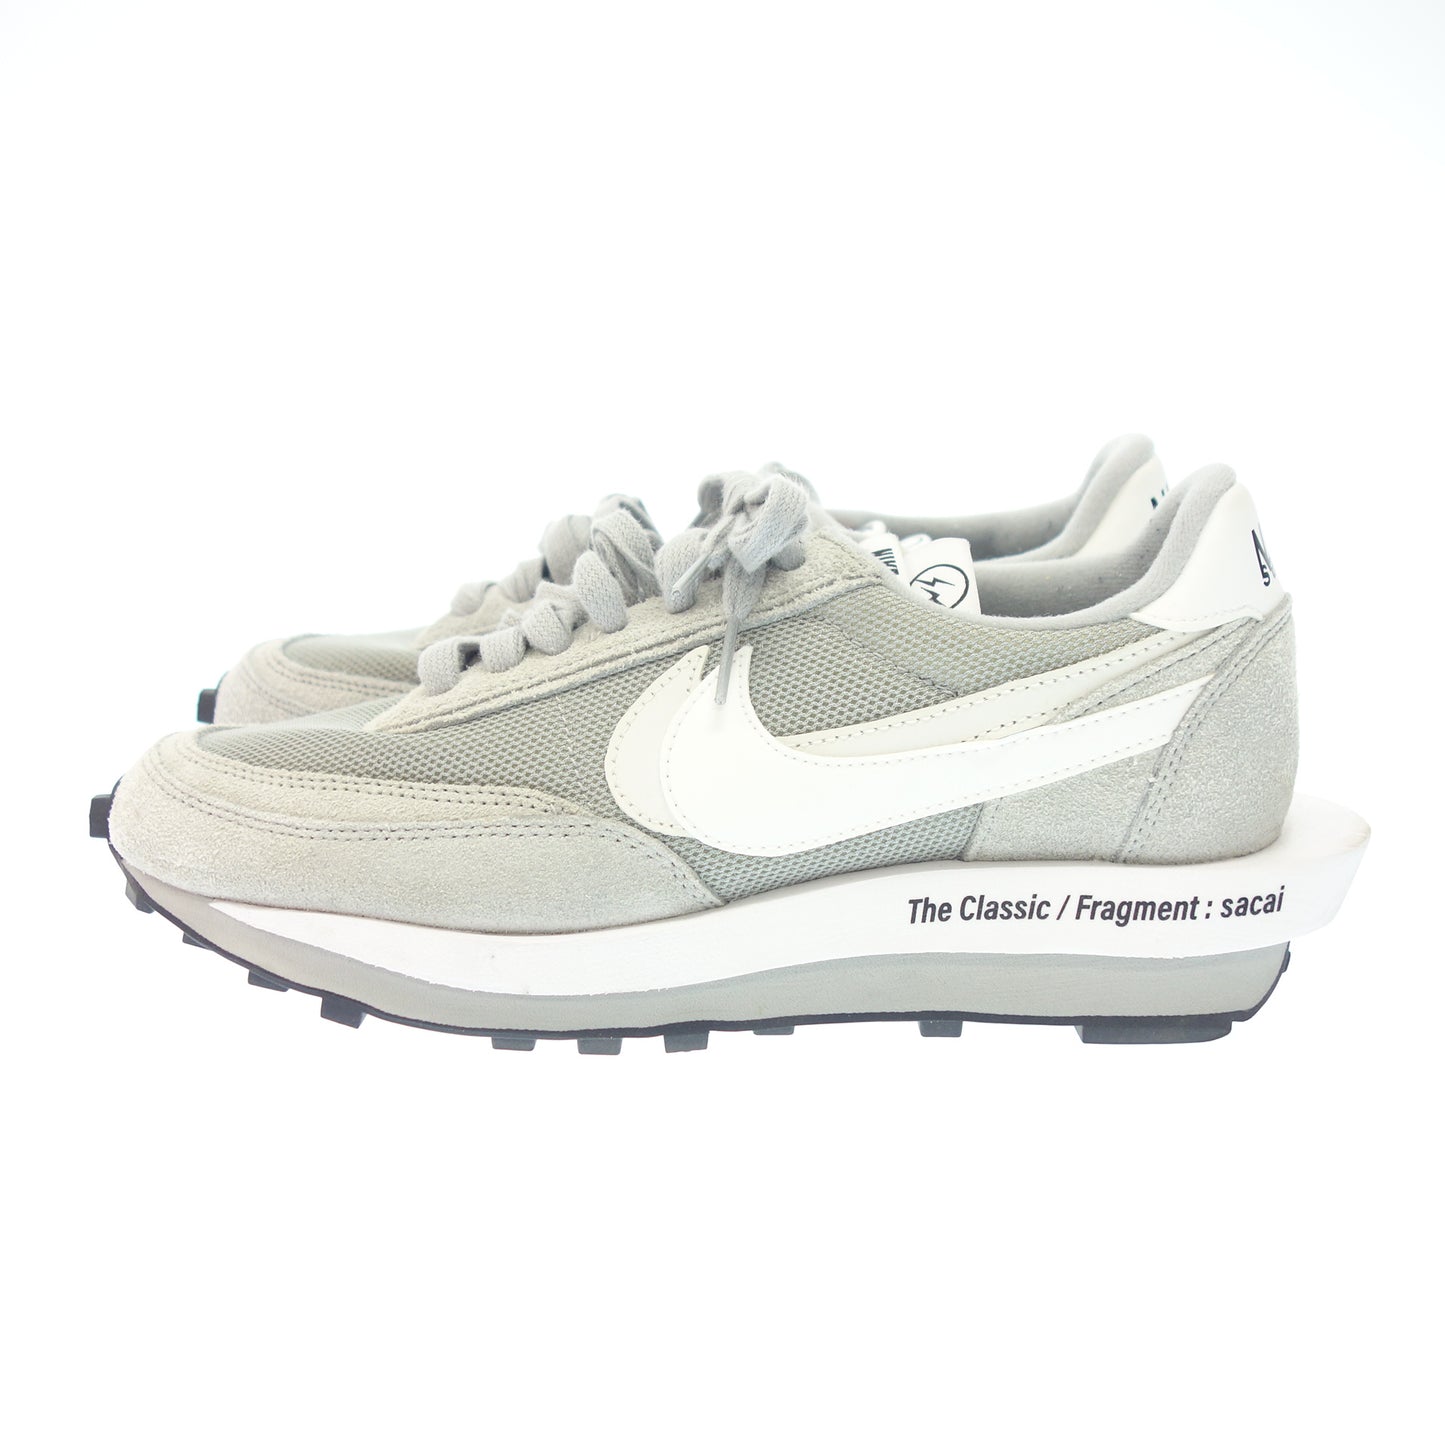 状况非常好 ◆ Nike Sacai 运动鞋 DH2684-001 LD 华夫格男士灰色 尺码 26.5 厘米 NIKE Sacai [AFD8] 